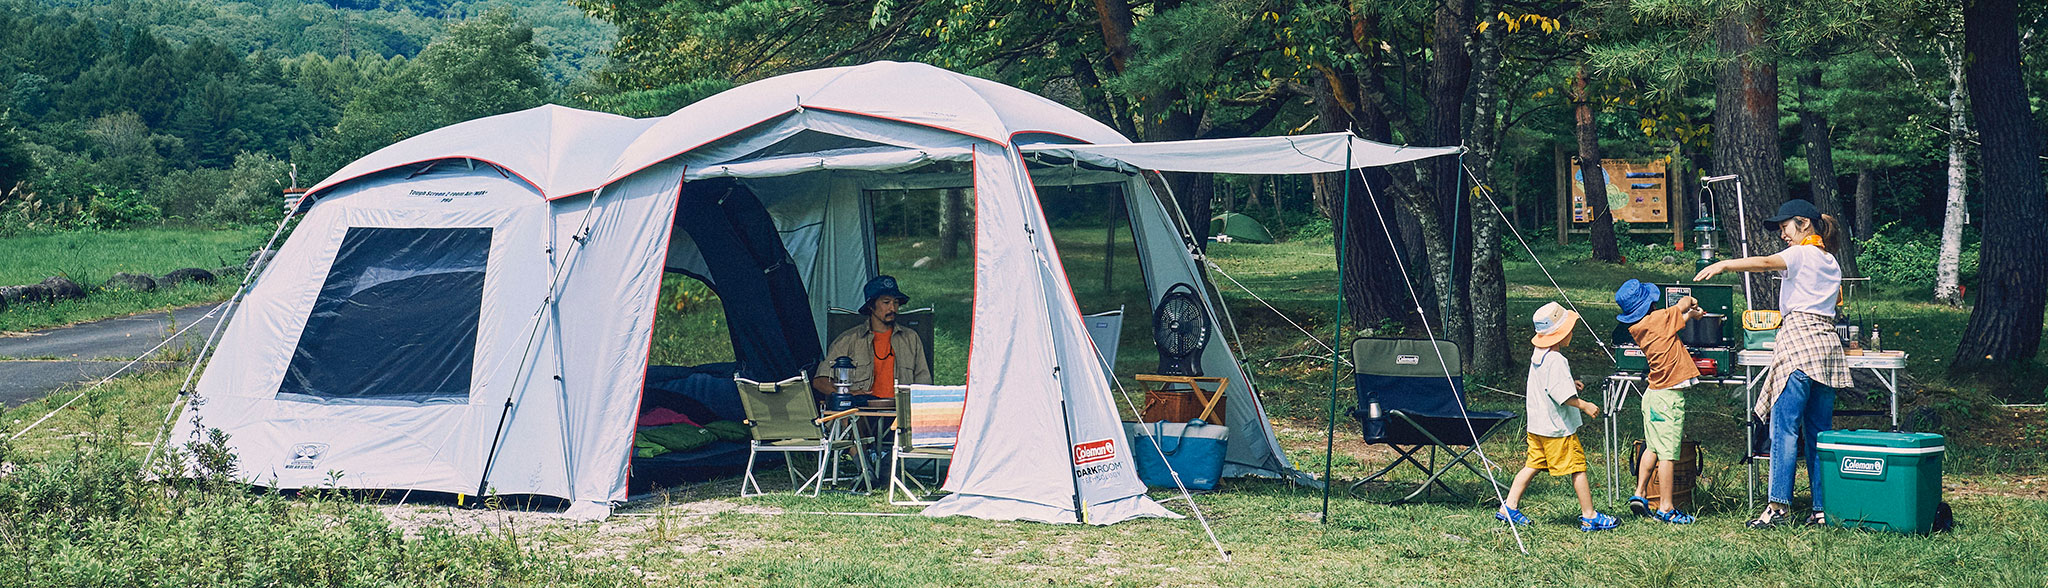 キャンプ 2ルームテント | コールマン オンラインショップ